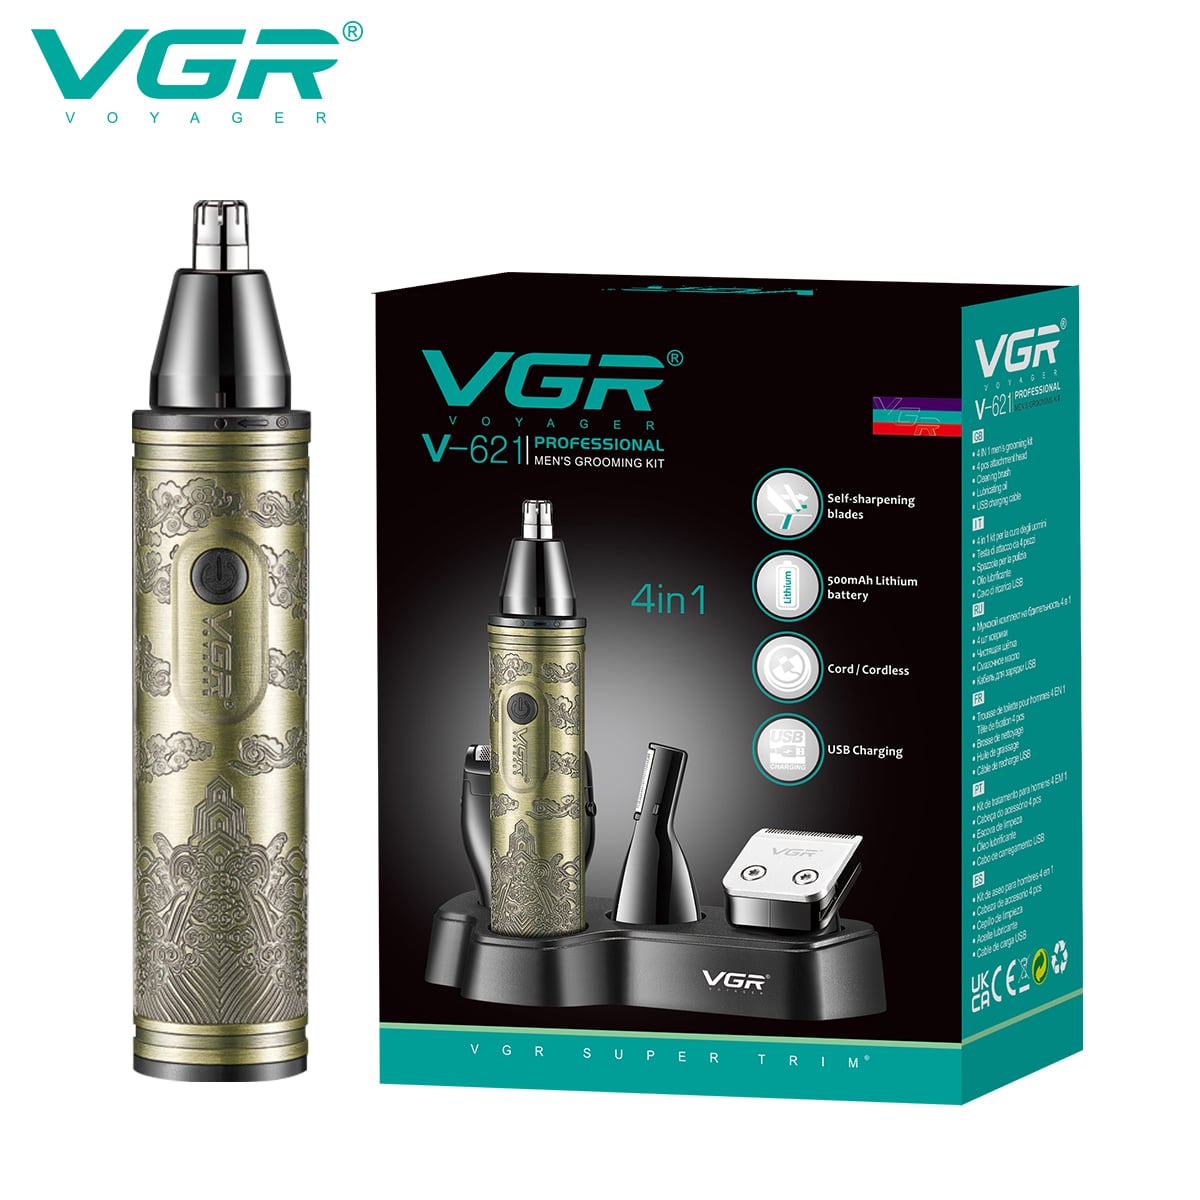 VGR V-621 Professional 4 in 1 Grooming Kit, (Gold)